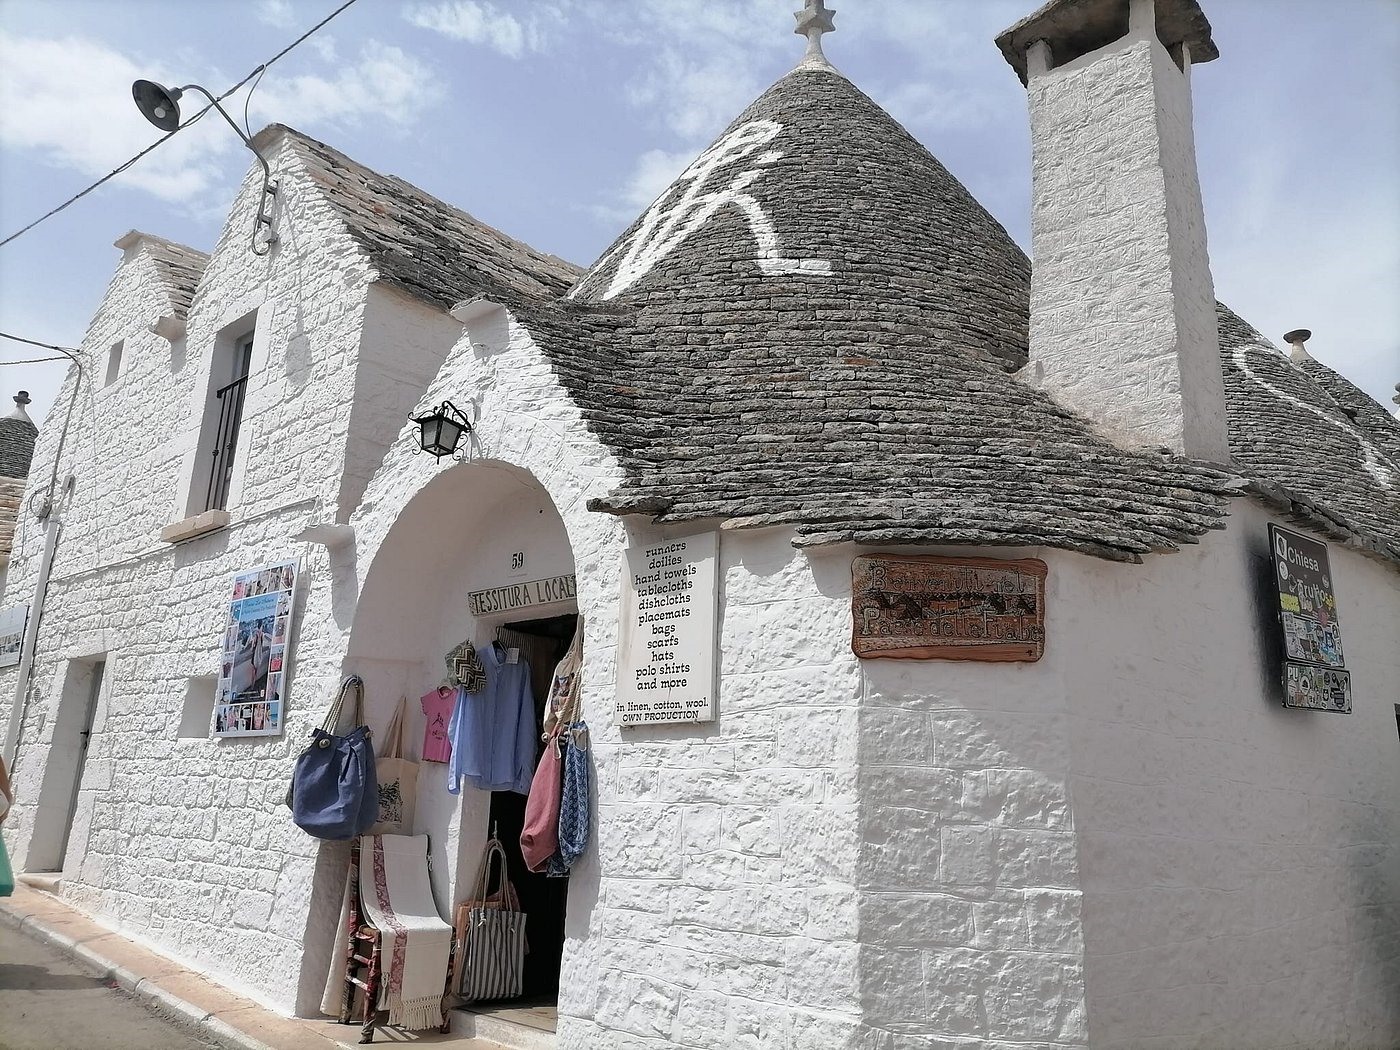 Thị trấn nhỏ này đã được UNESCO công nhận là Di sản Thế giới với các ngôi nhà Trulli có mái hình chóp nón quét vôi trắng đặc trưng của khu vực.